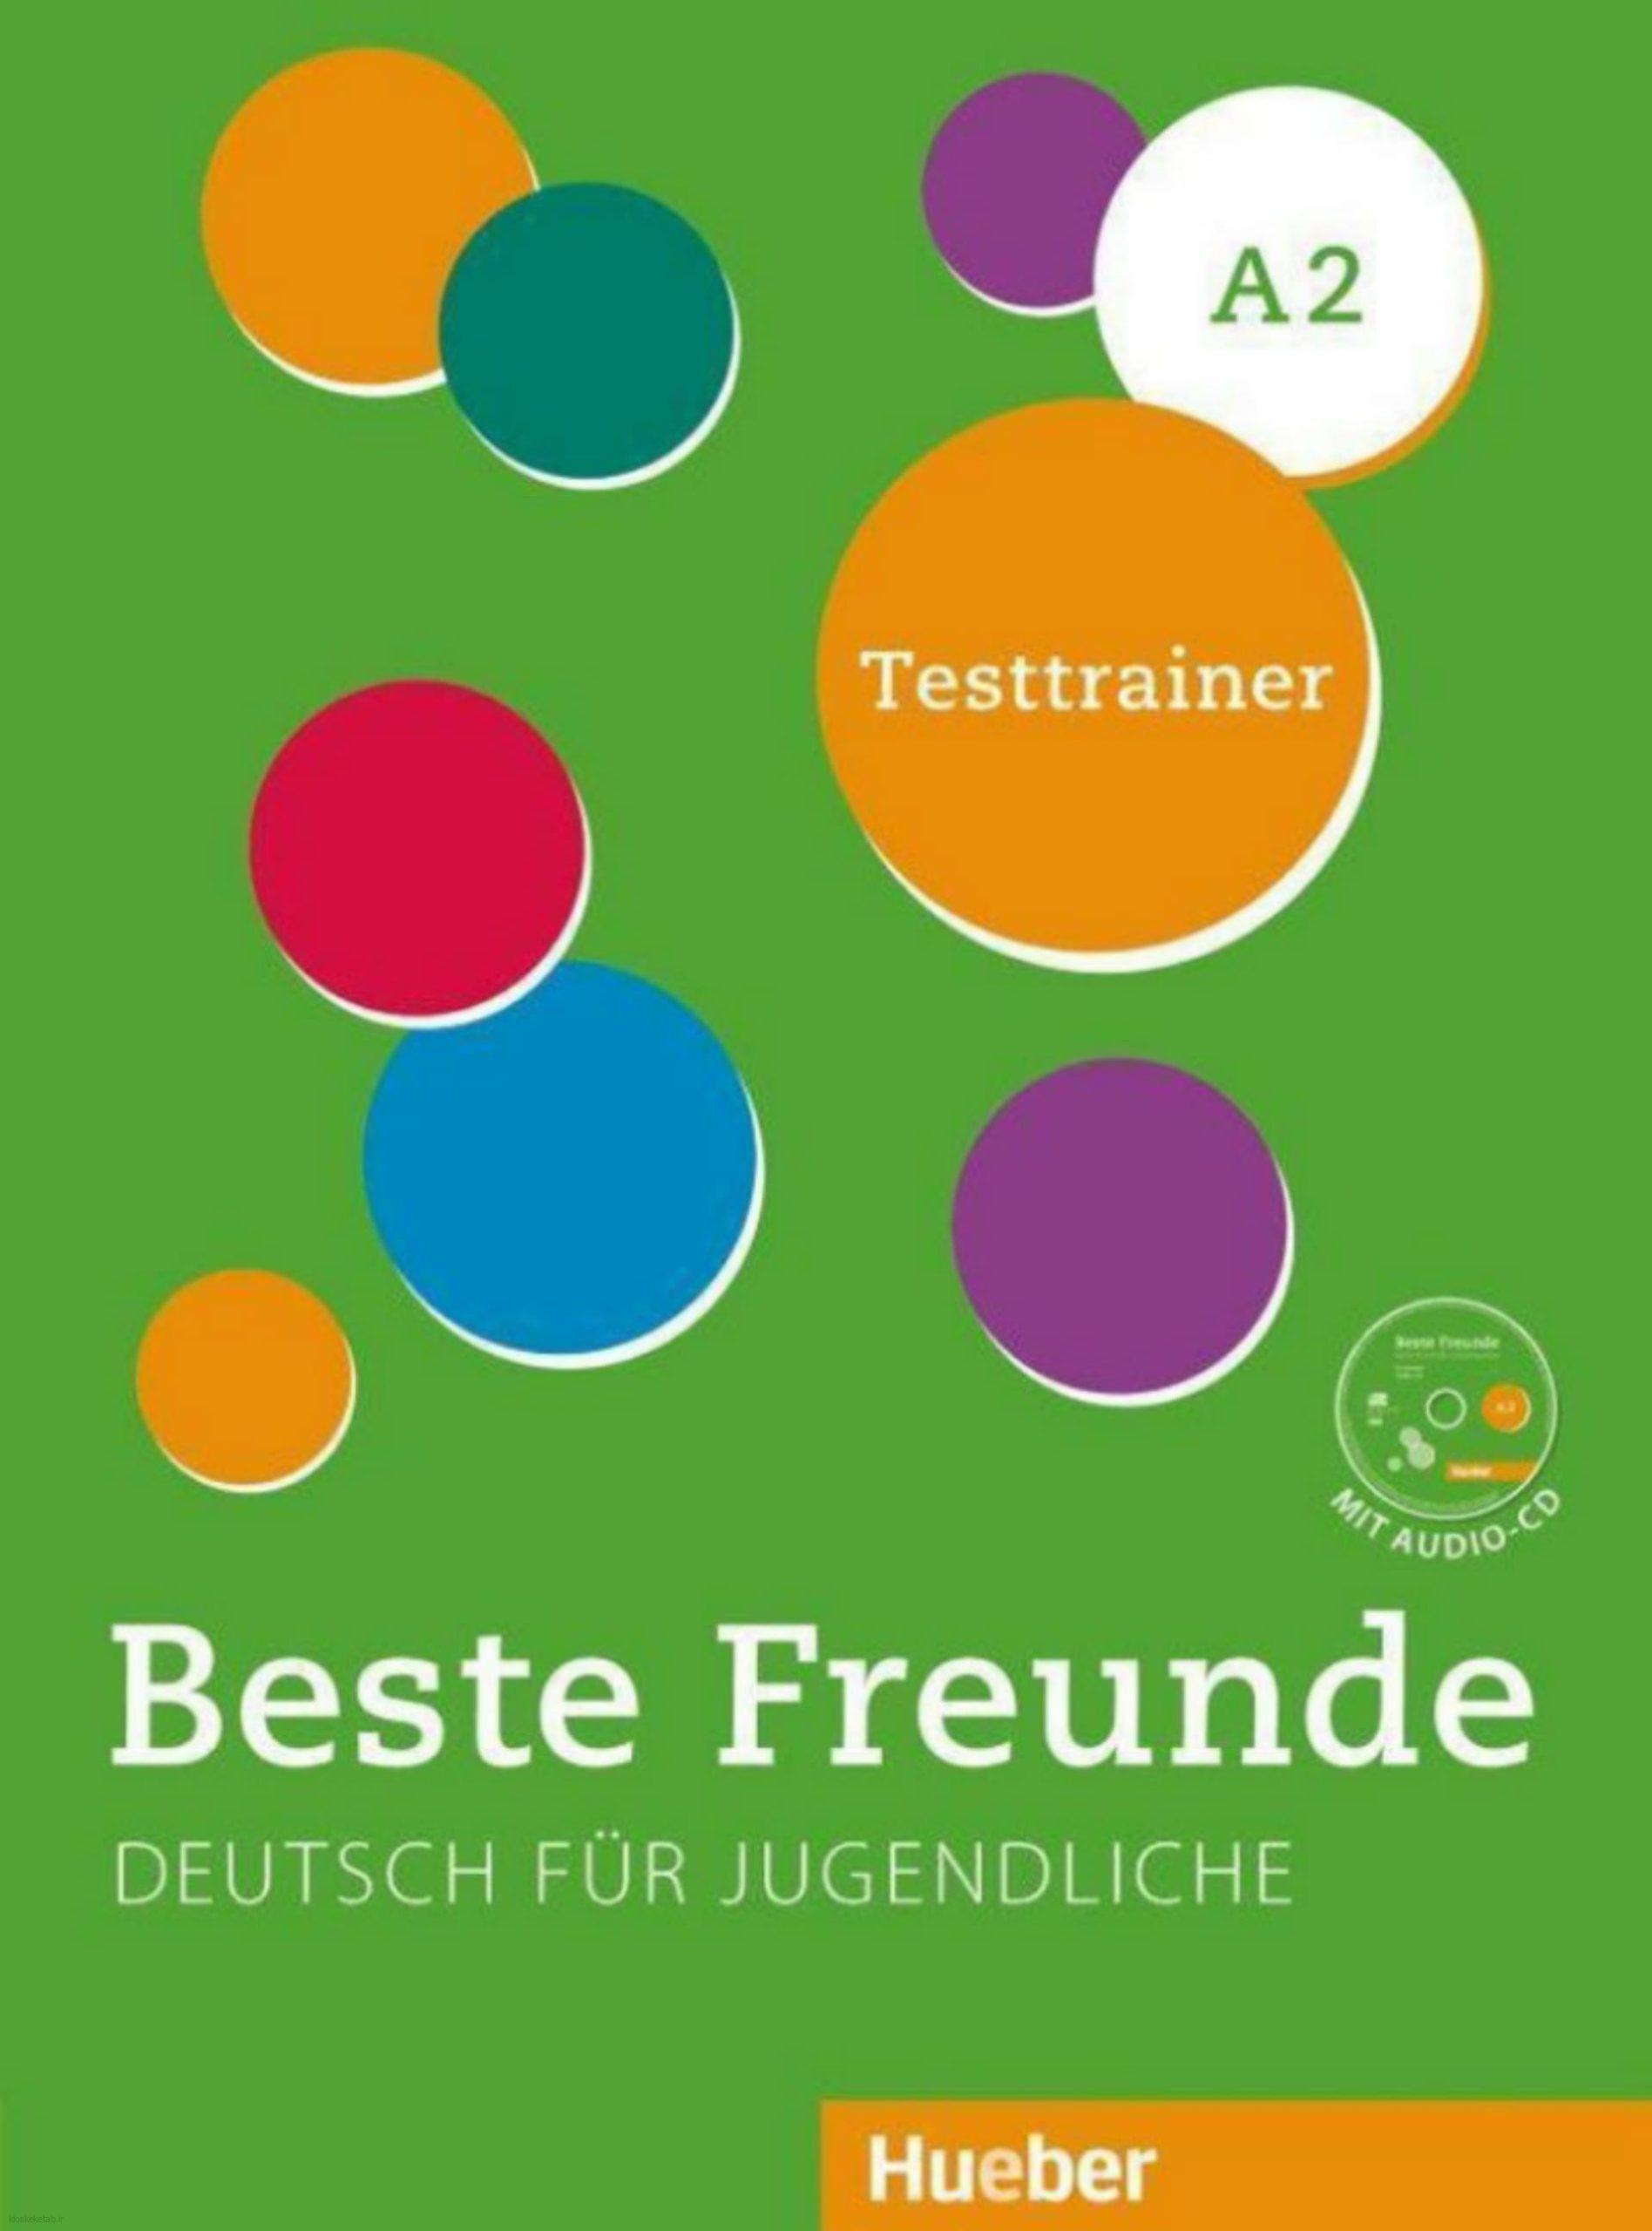 دانلود کتاب آلمانیbeste freunde testtrainer a2